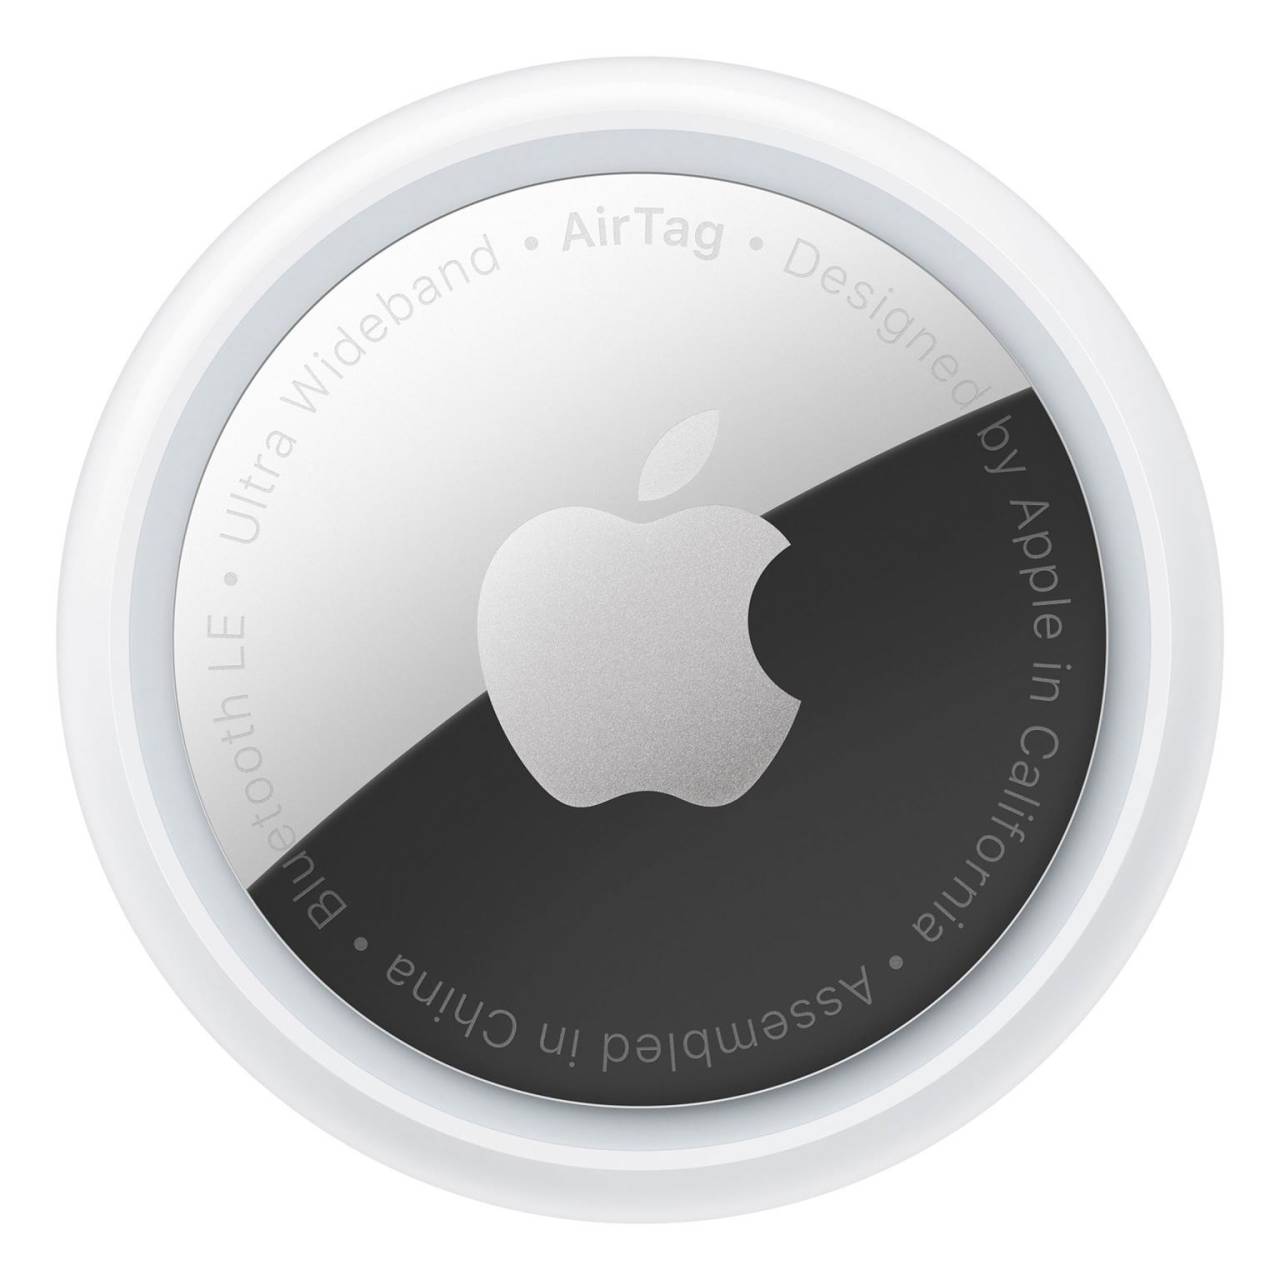 Apple AirTag Bluetooth-Tracker – Ortung für Gegenstände wie Schlüssel, Geldbörsen oder Rucksäcke, 4er-Set